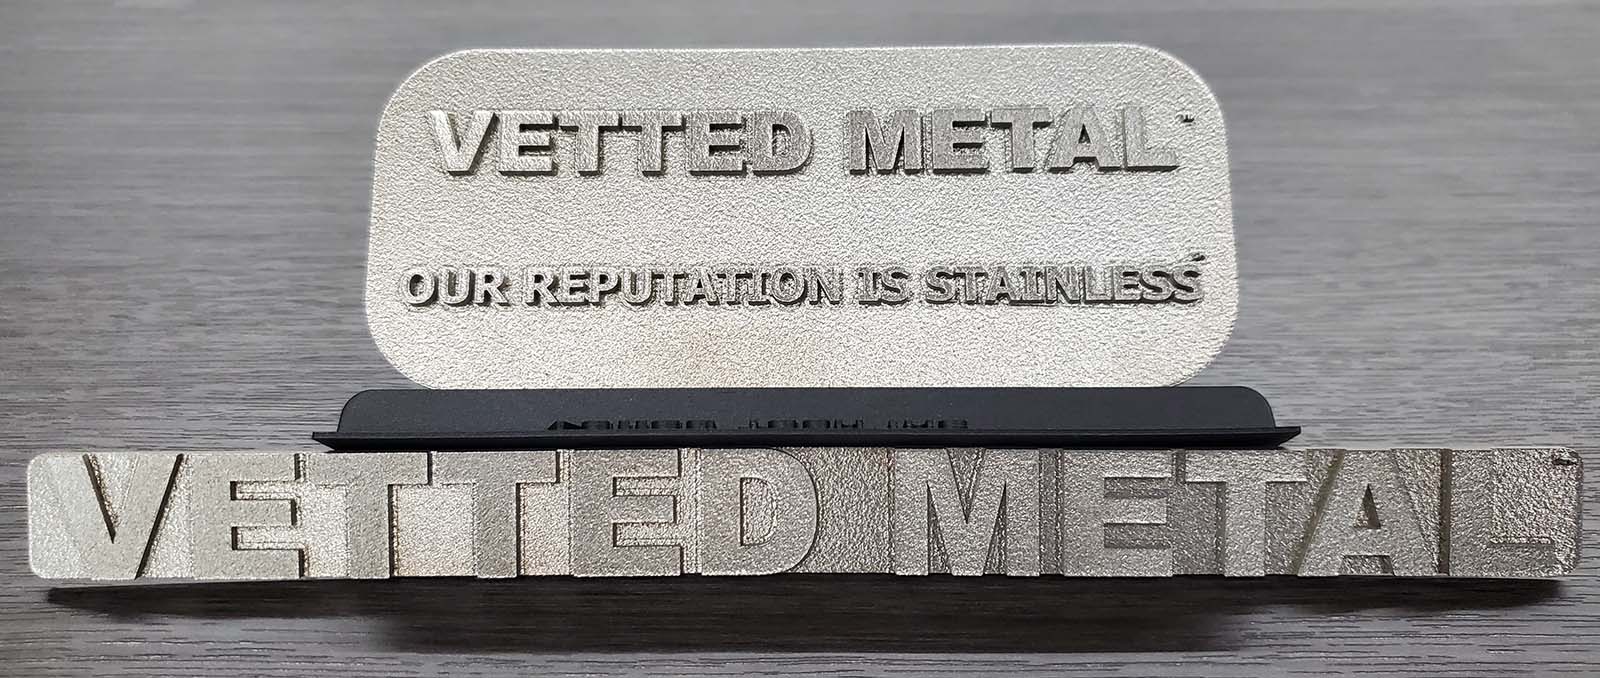 Rep and Metal